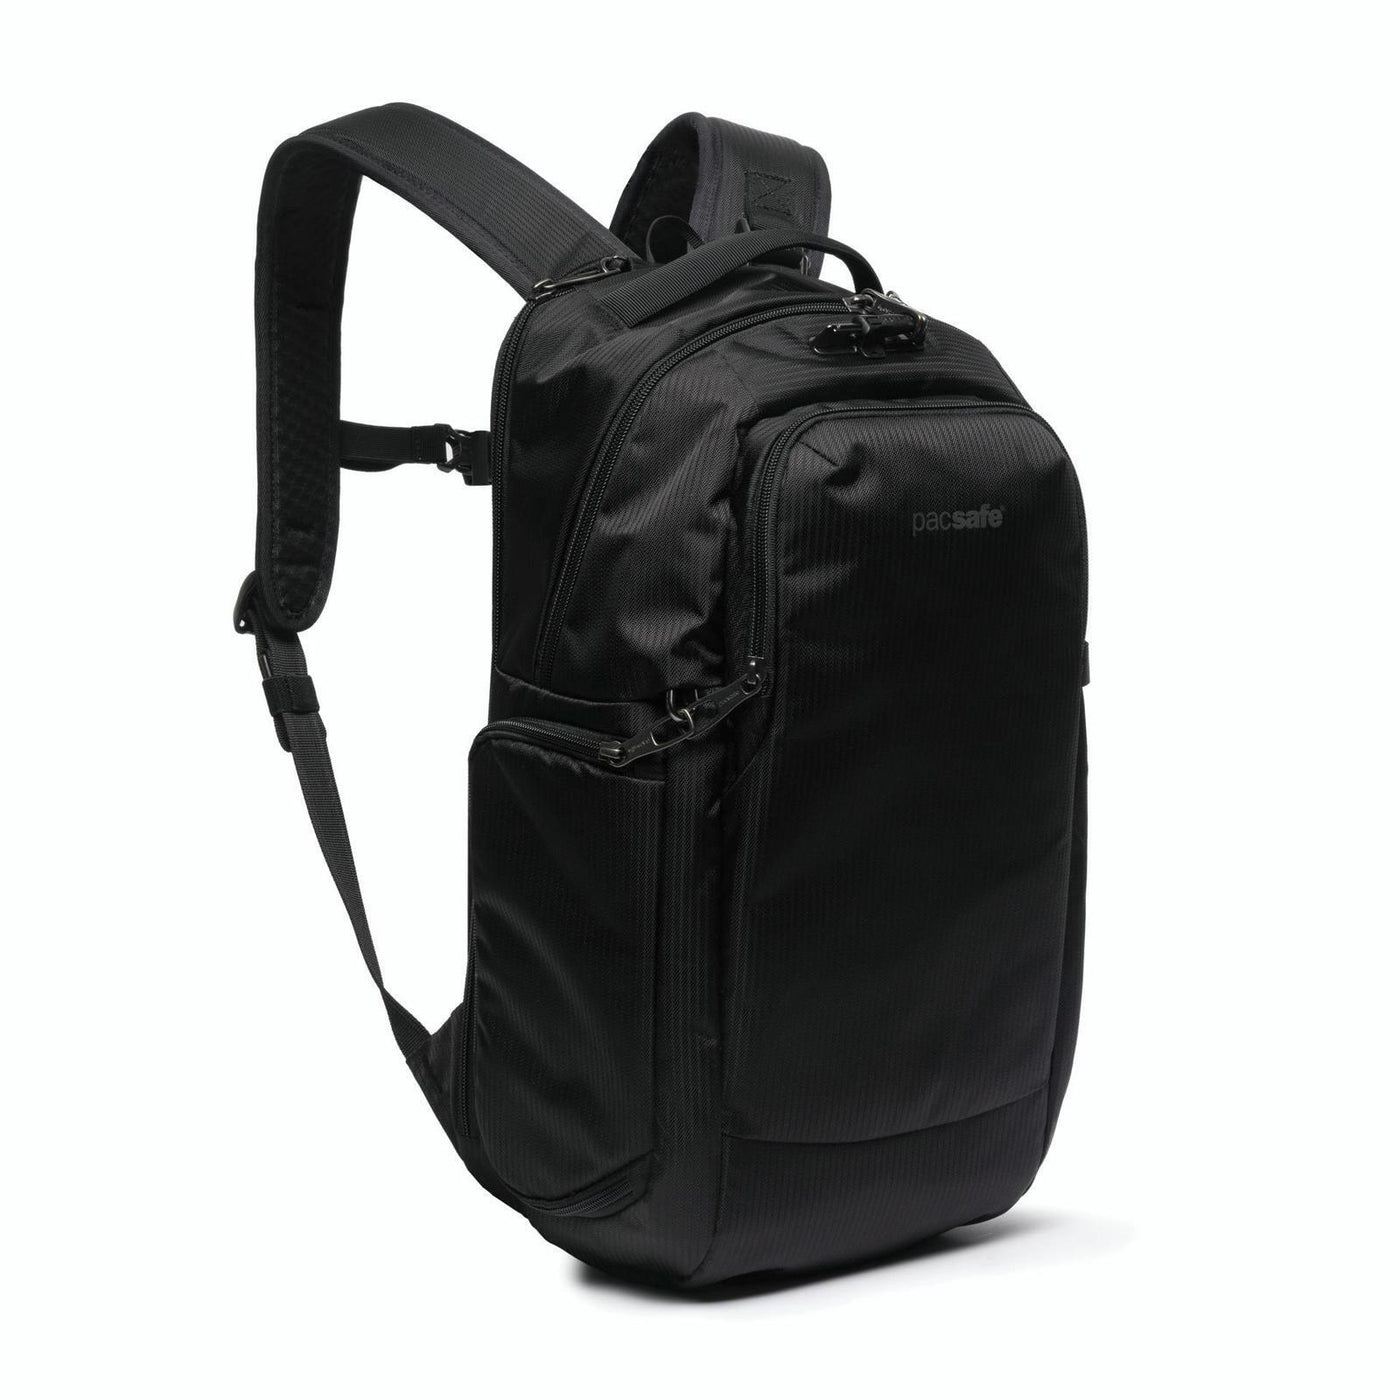 Camsafe X17L backpack black ECONYL